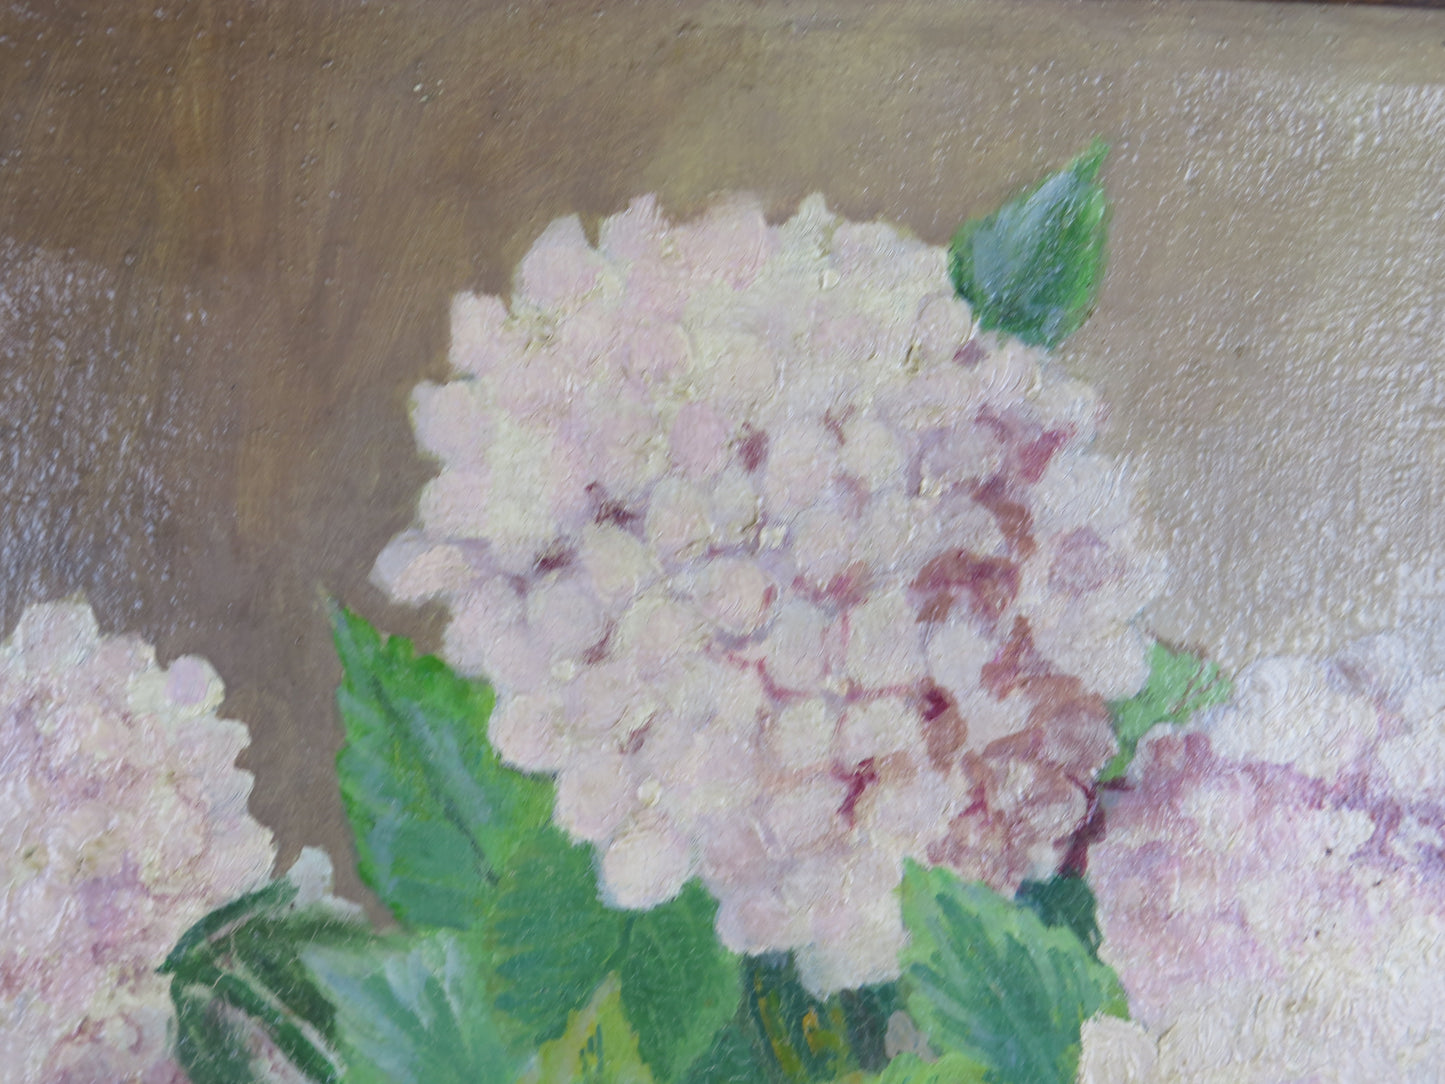 Quadro ad olio firmato Castellini datato 1942 fiori floreale ortensie con cornice coeva dipinto olio x1